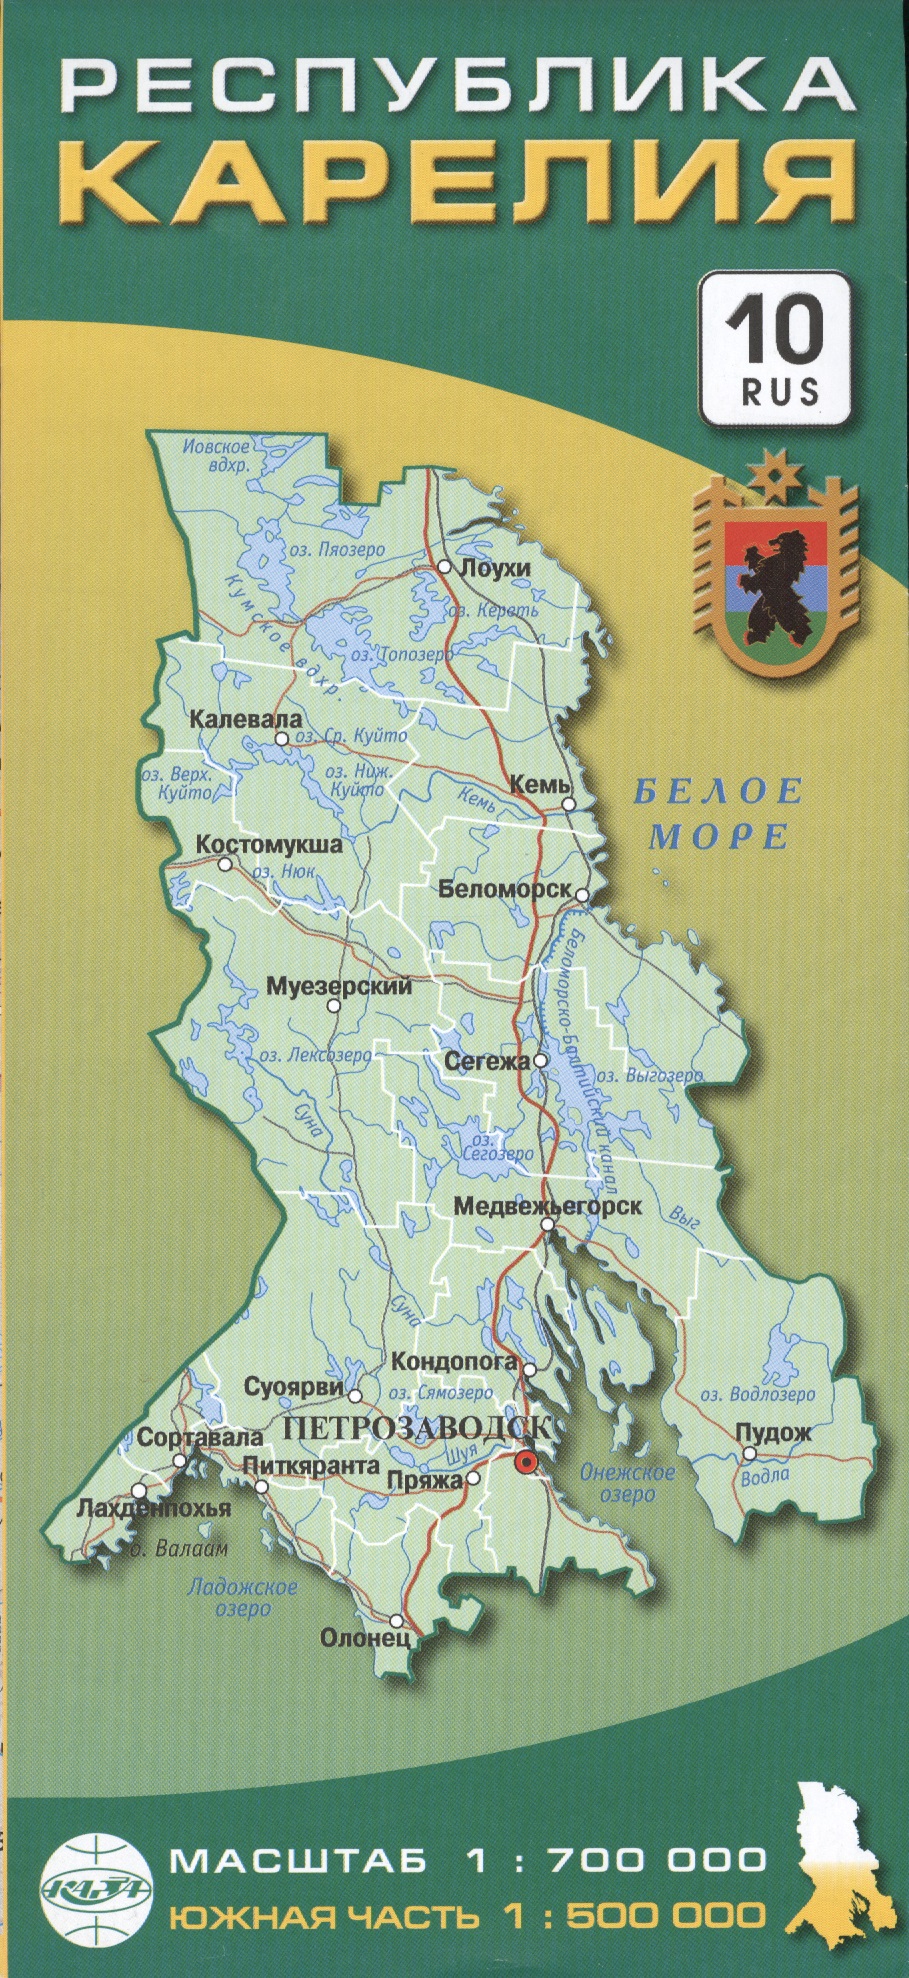 Карта Республика Карелия 1:700тыс.,южная часть 1:500тыс. атлас карелия южная часть